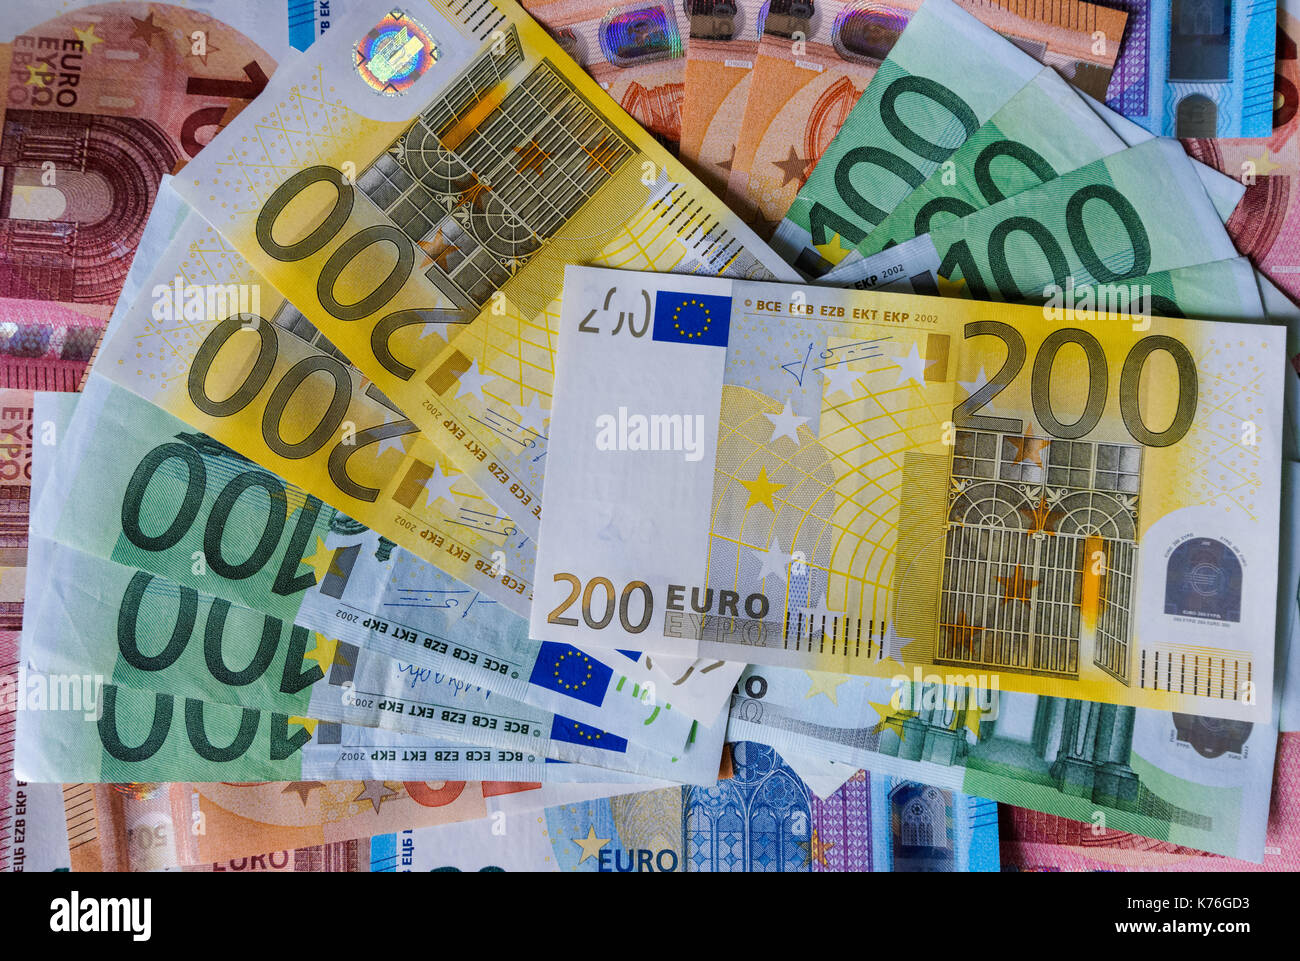 Euro banknotes, high denomination notes Stock Photo